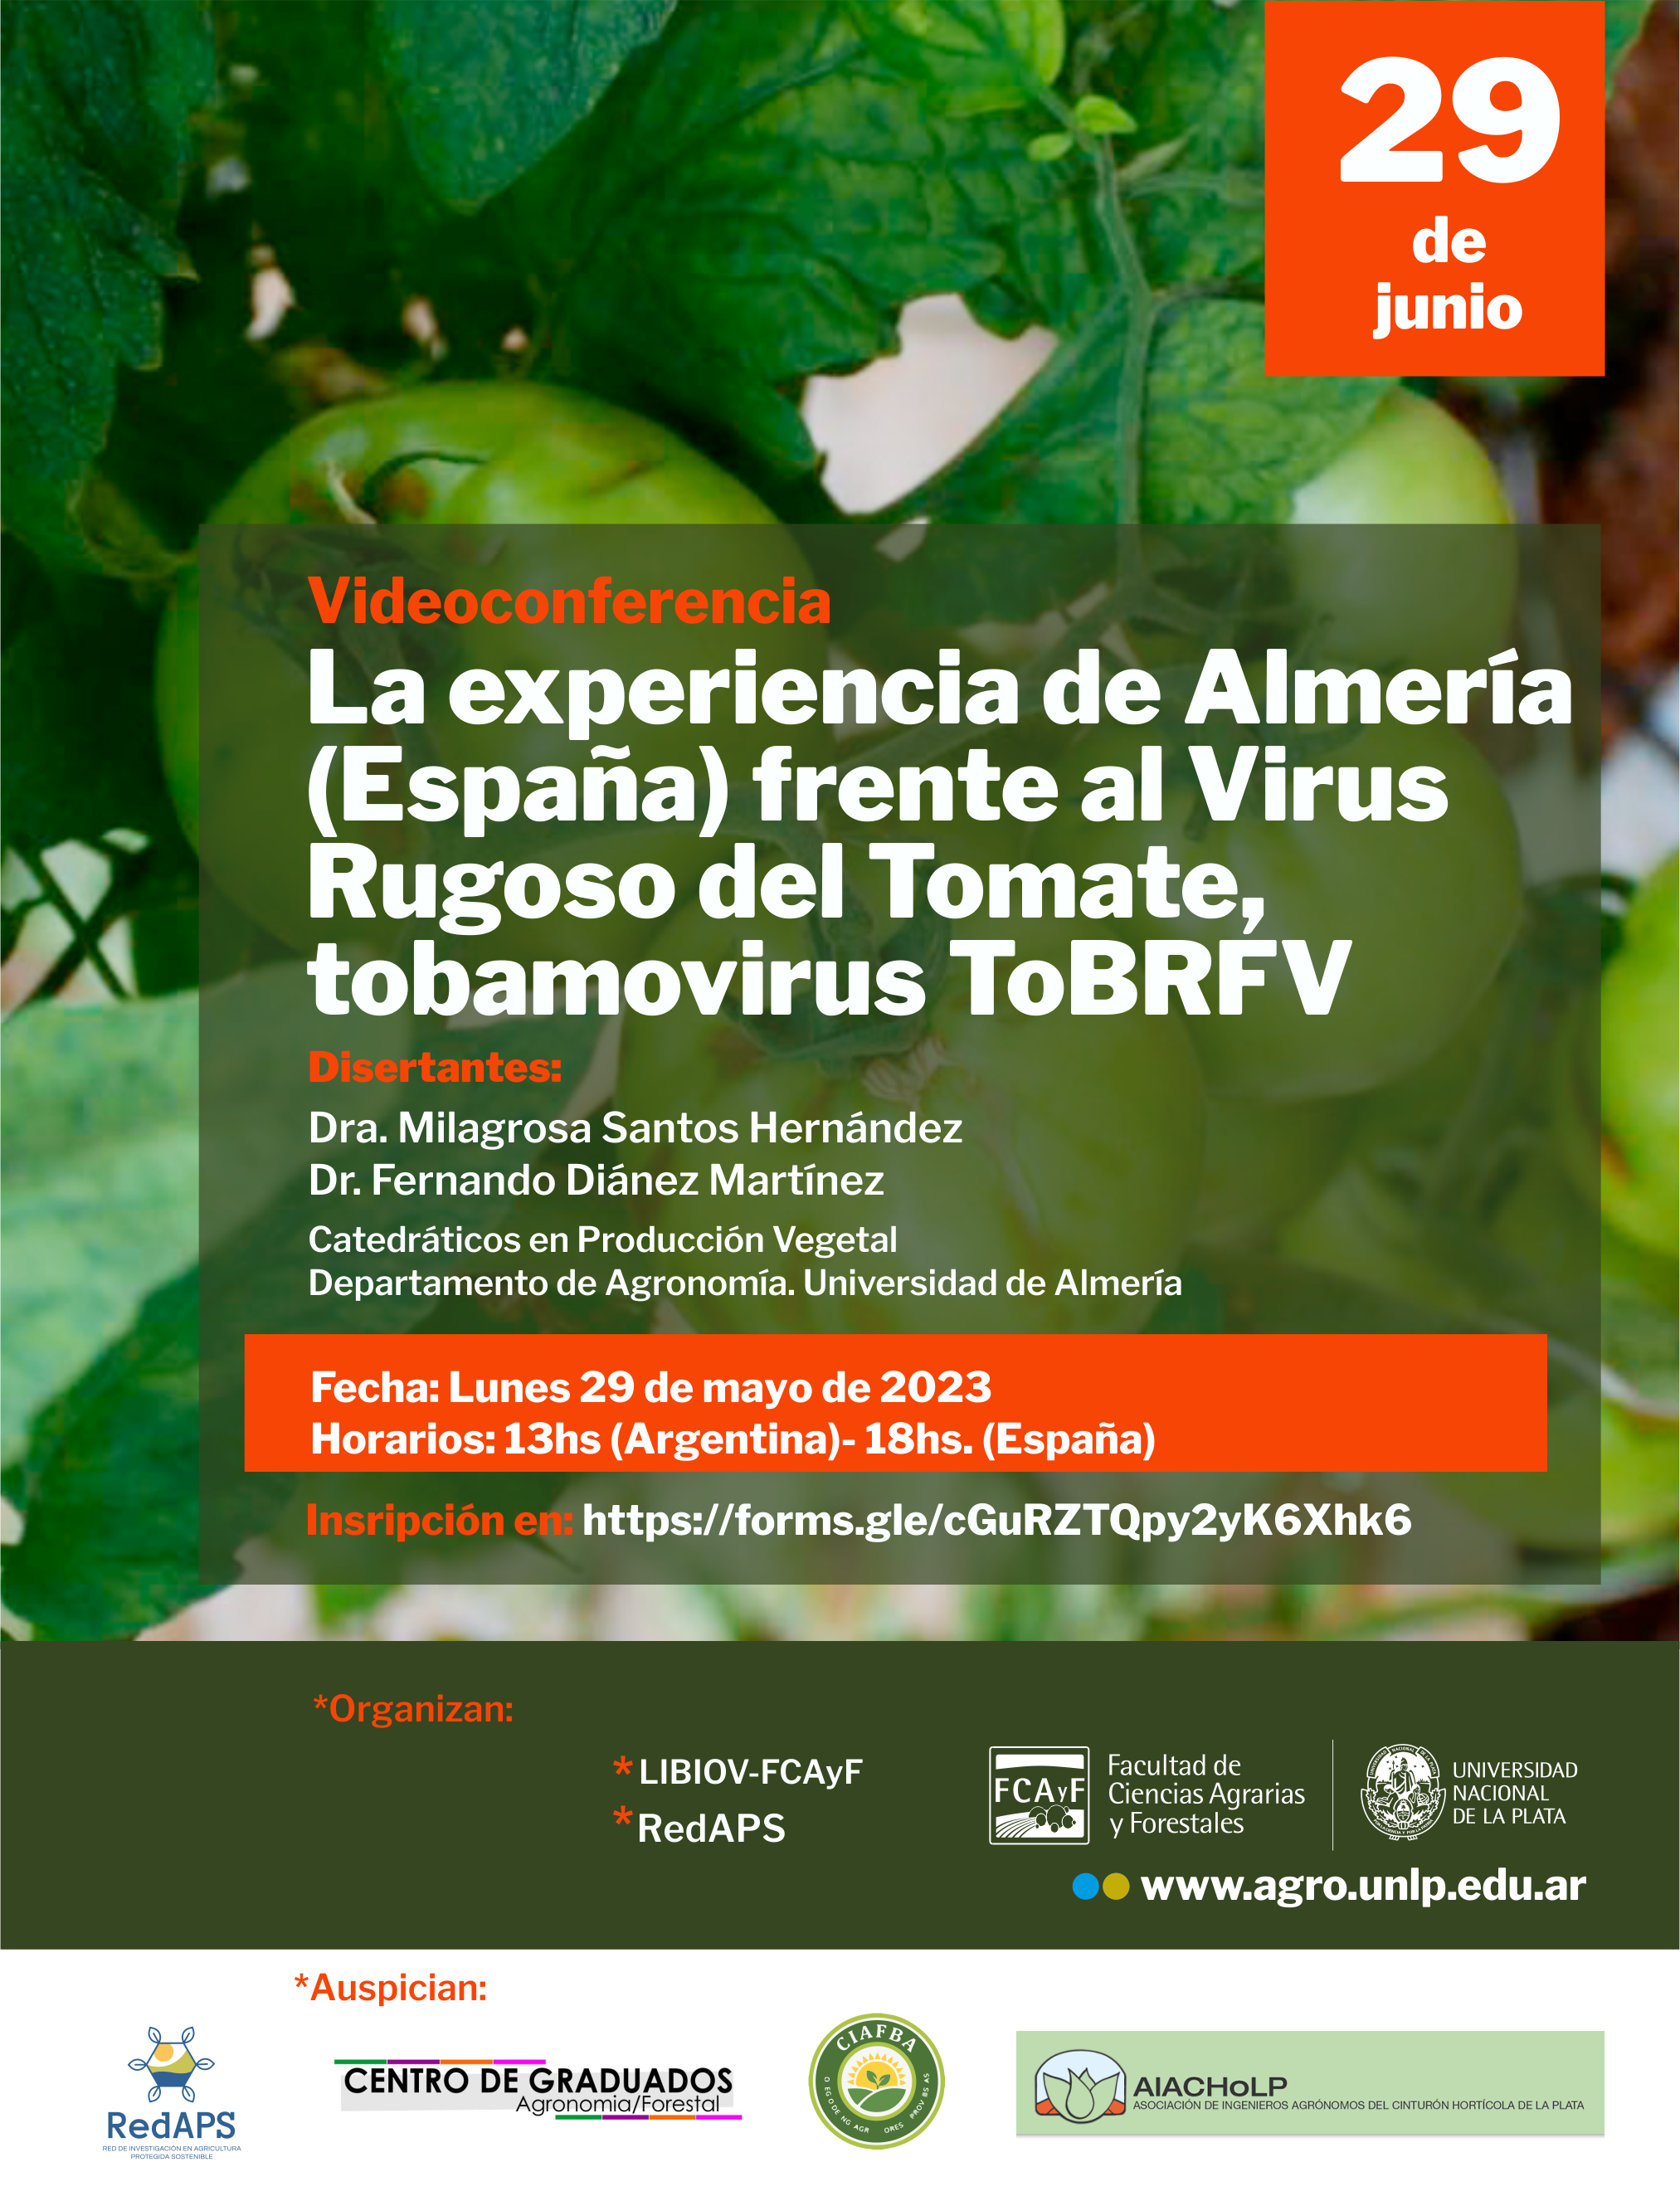 “La experiencia de Almería (España) frente al Virus Rugoso del Tomate, tobamovirus ToBRFV“